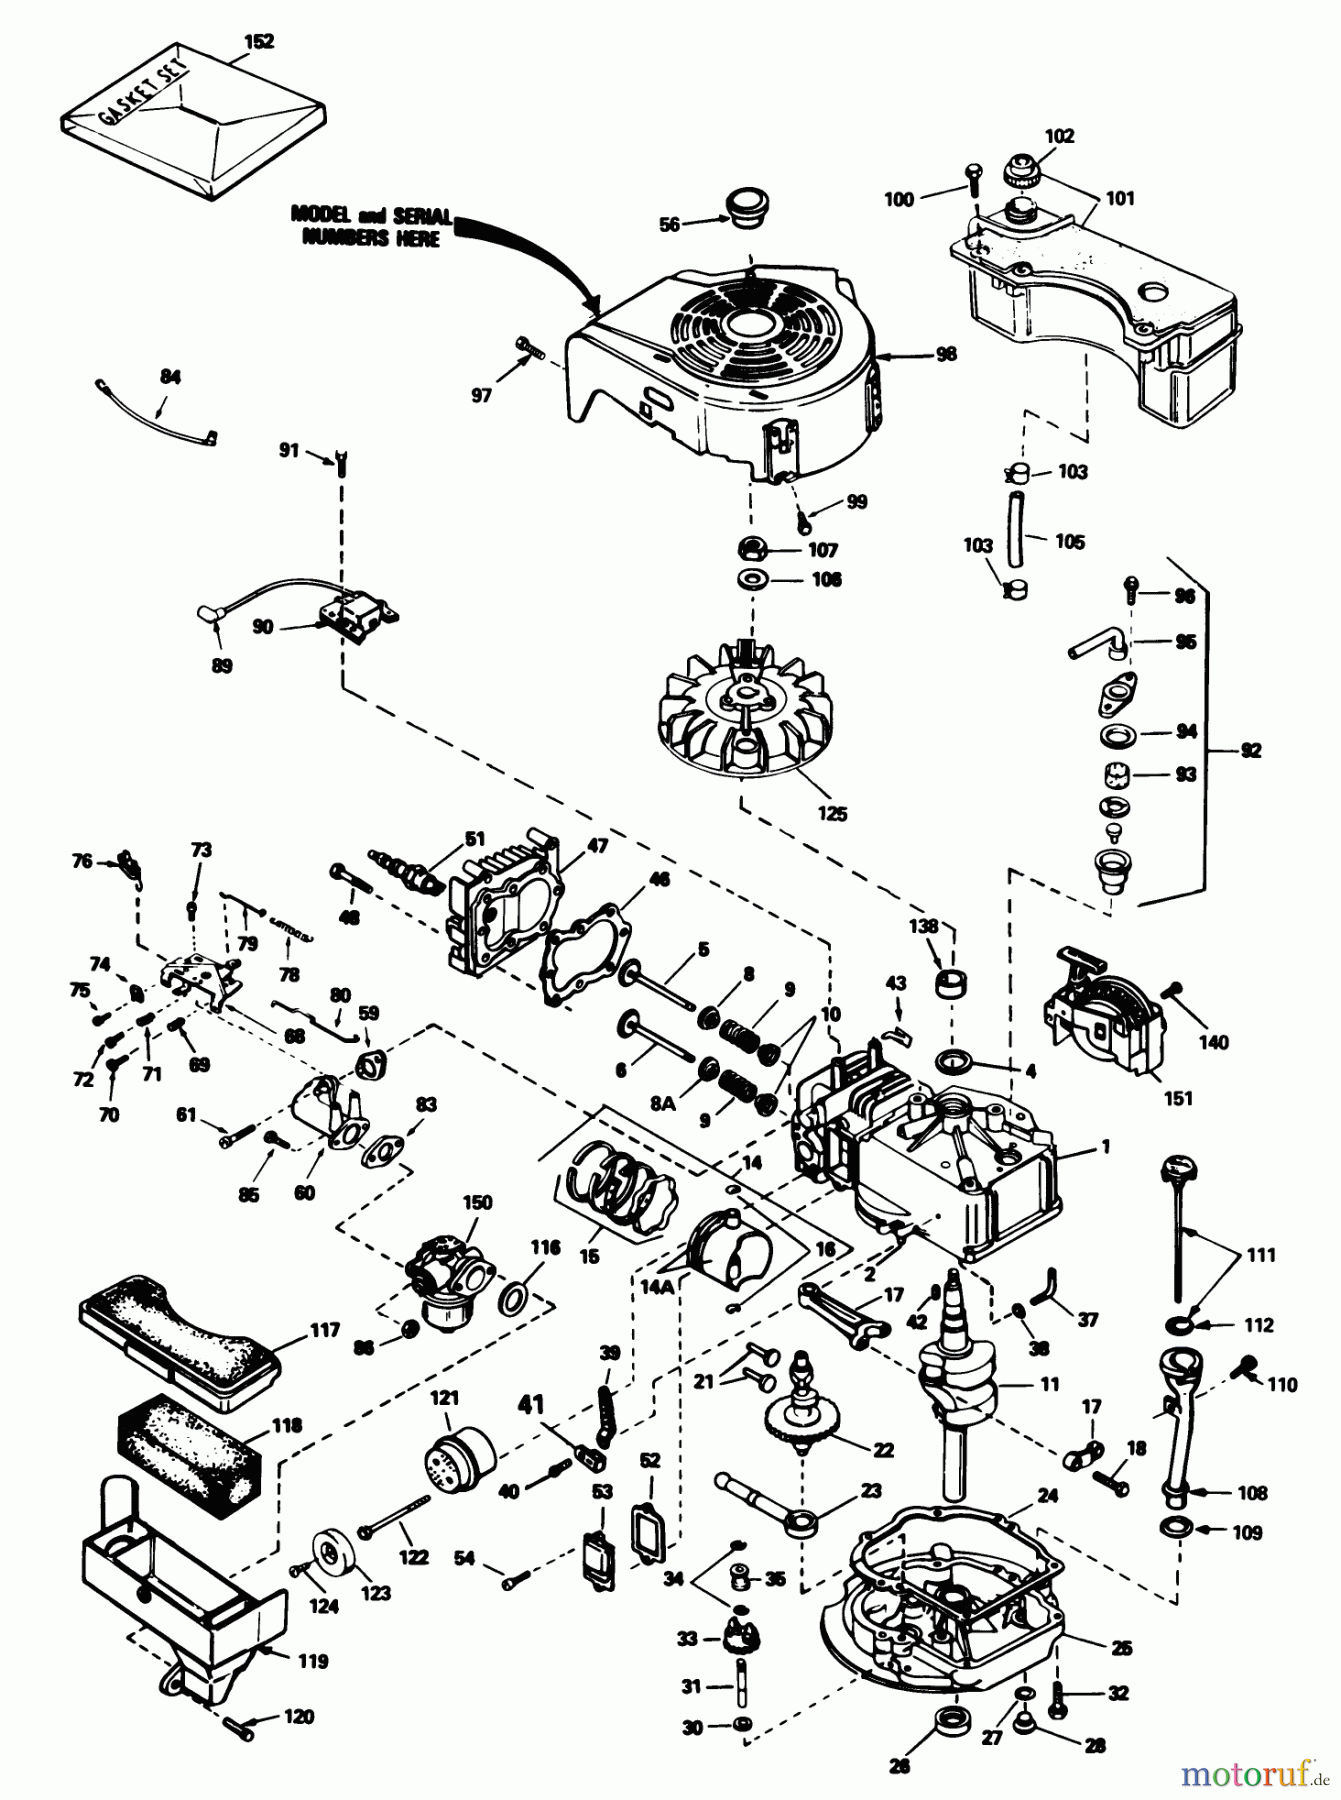  Toro Neu Mowers, Walk-Behind Seite 1 20782C - Toro Lawnmower, 1986 (6000001-6999999) ENGINE TECUMSEH MODEL NO. TVS-100-44003